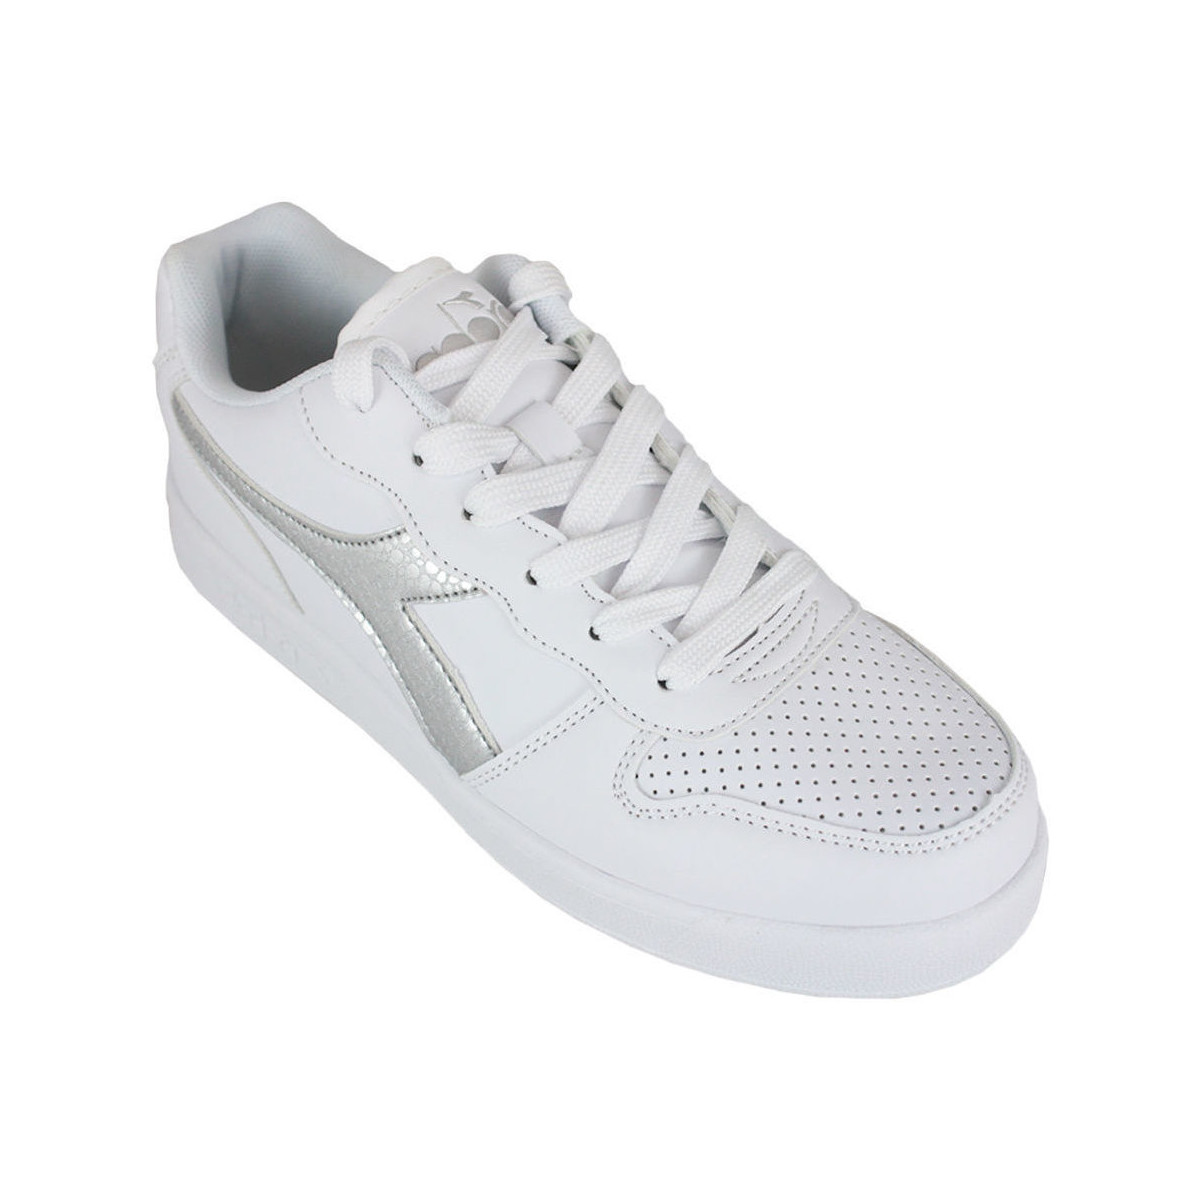 Pantofi Copii Sneakers Diadora 101.175781 01 C0516 White/Silver Argintiu